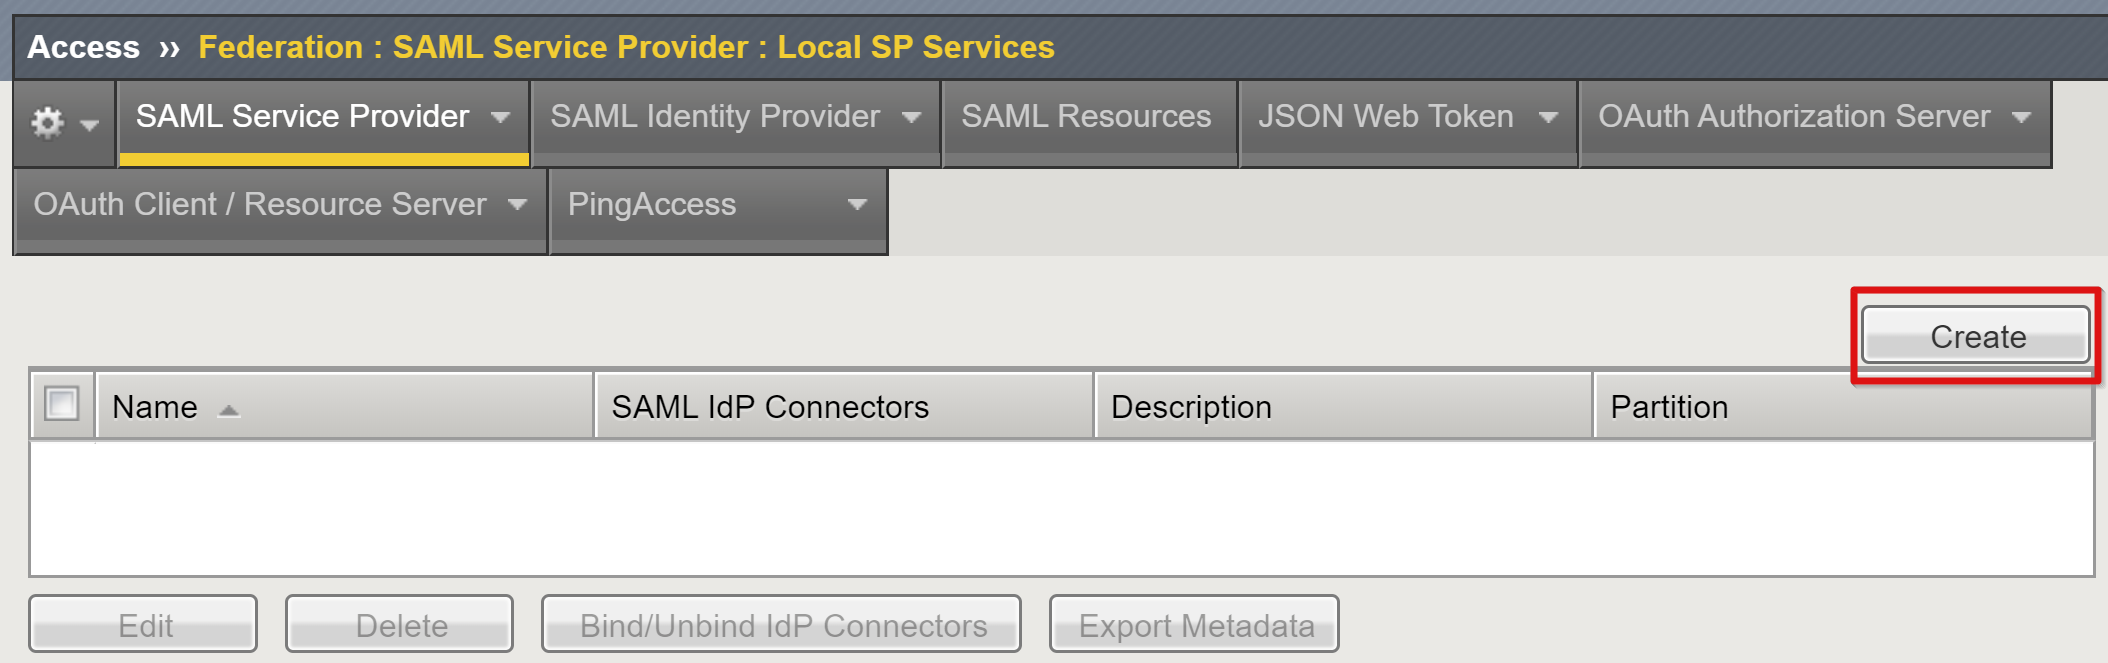 Captura de pantalla de la opción para crear en la página de servicios SP locales.